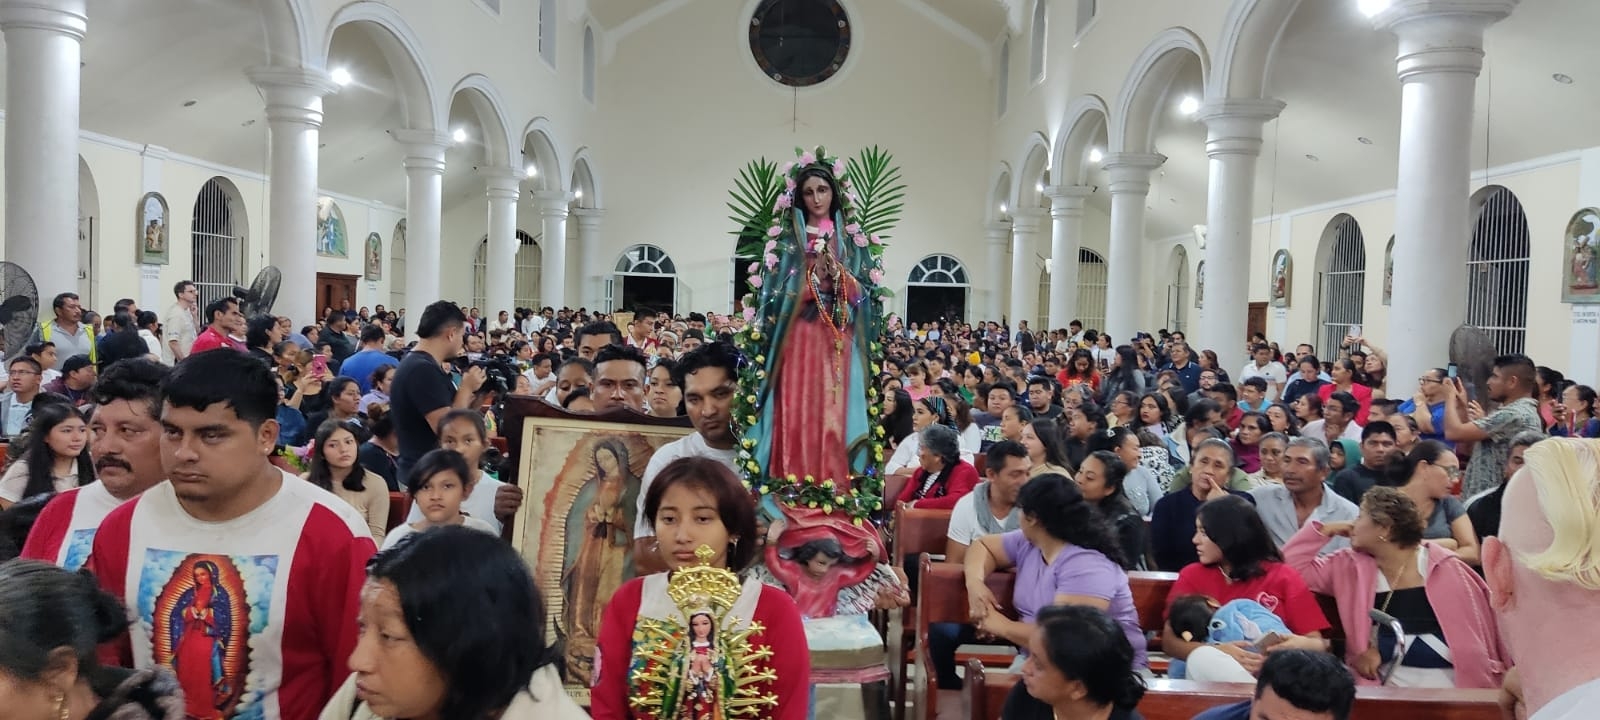 Playenses festejan a la Virgen de Guadalupe: EN VIVO